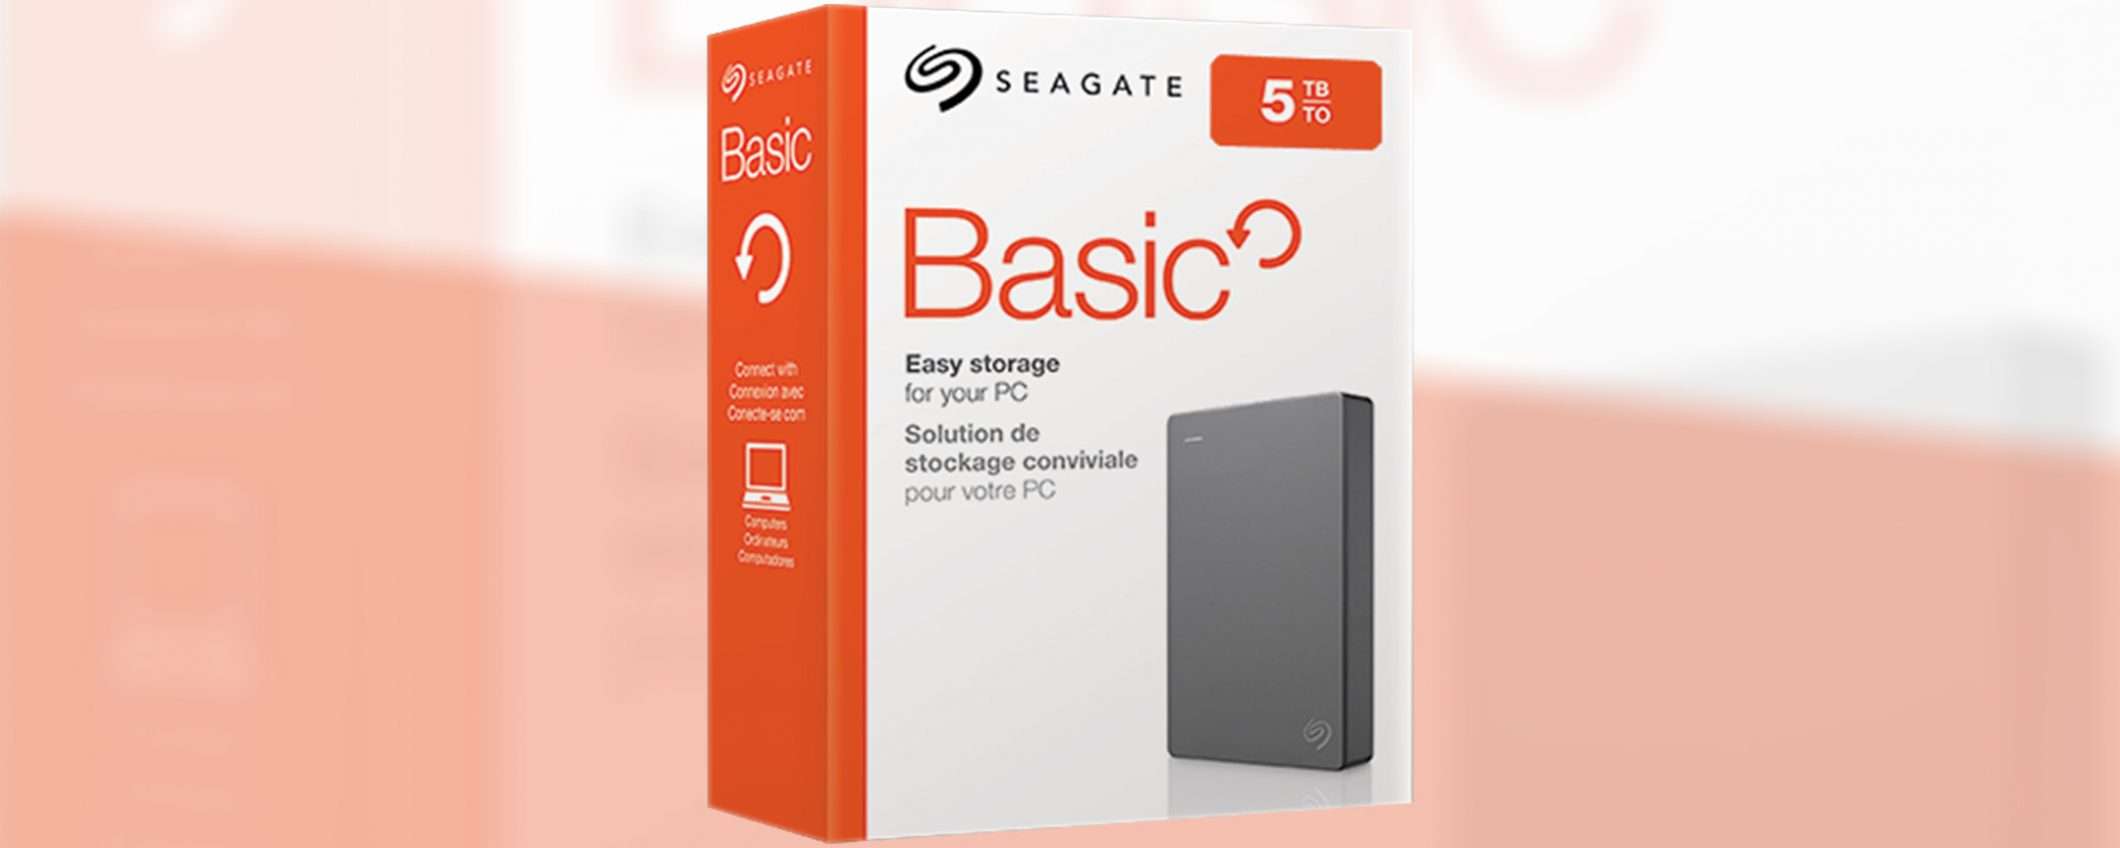 Seagate Basic, HDD 5 TB a un OTTIMO PREZZO su eBay